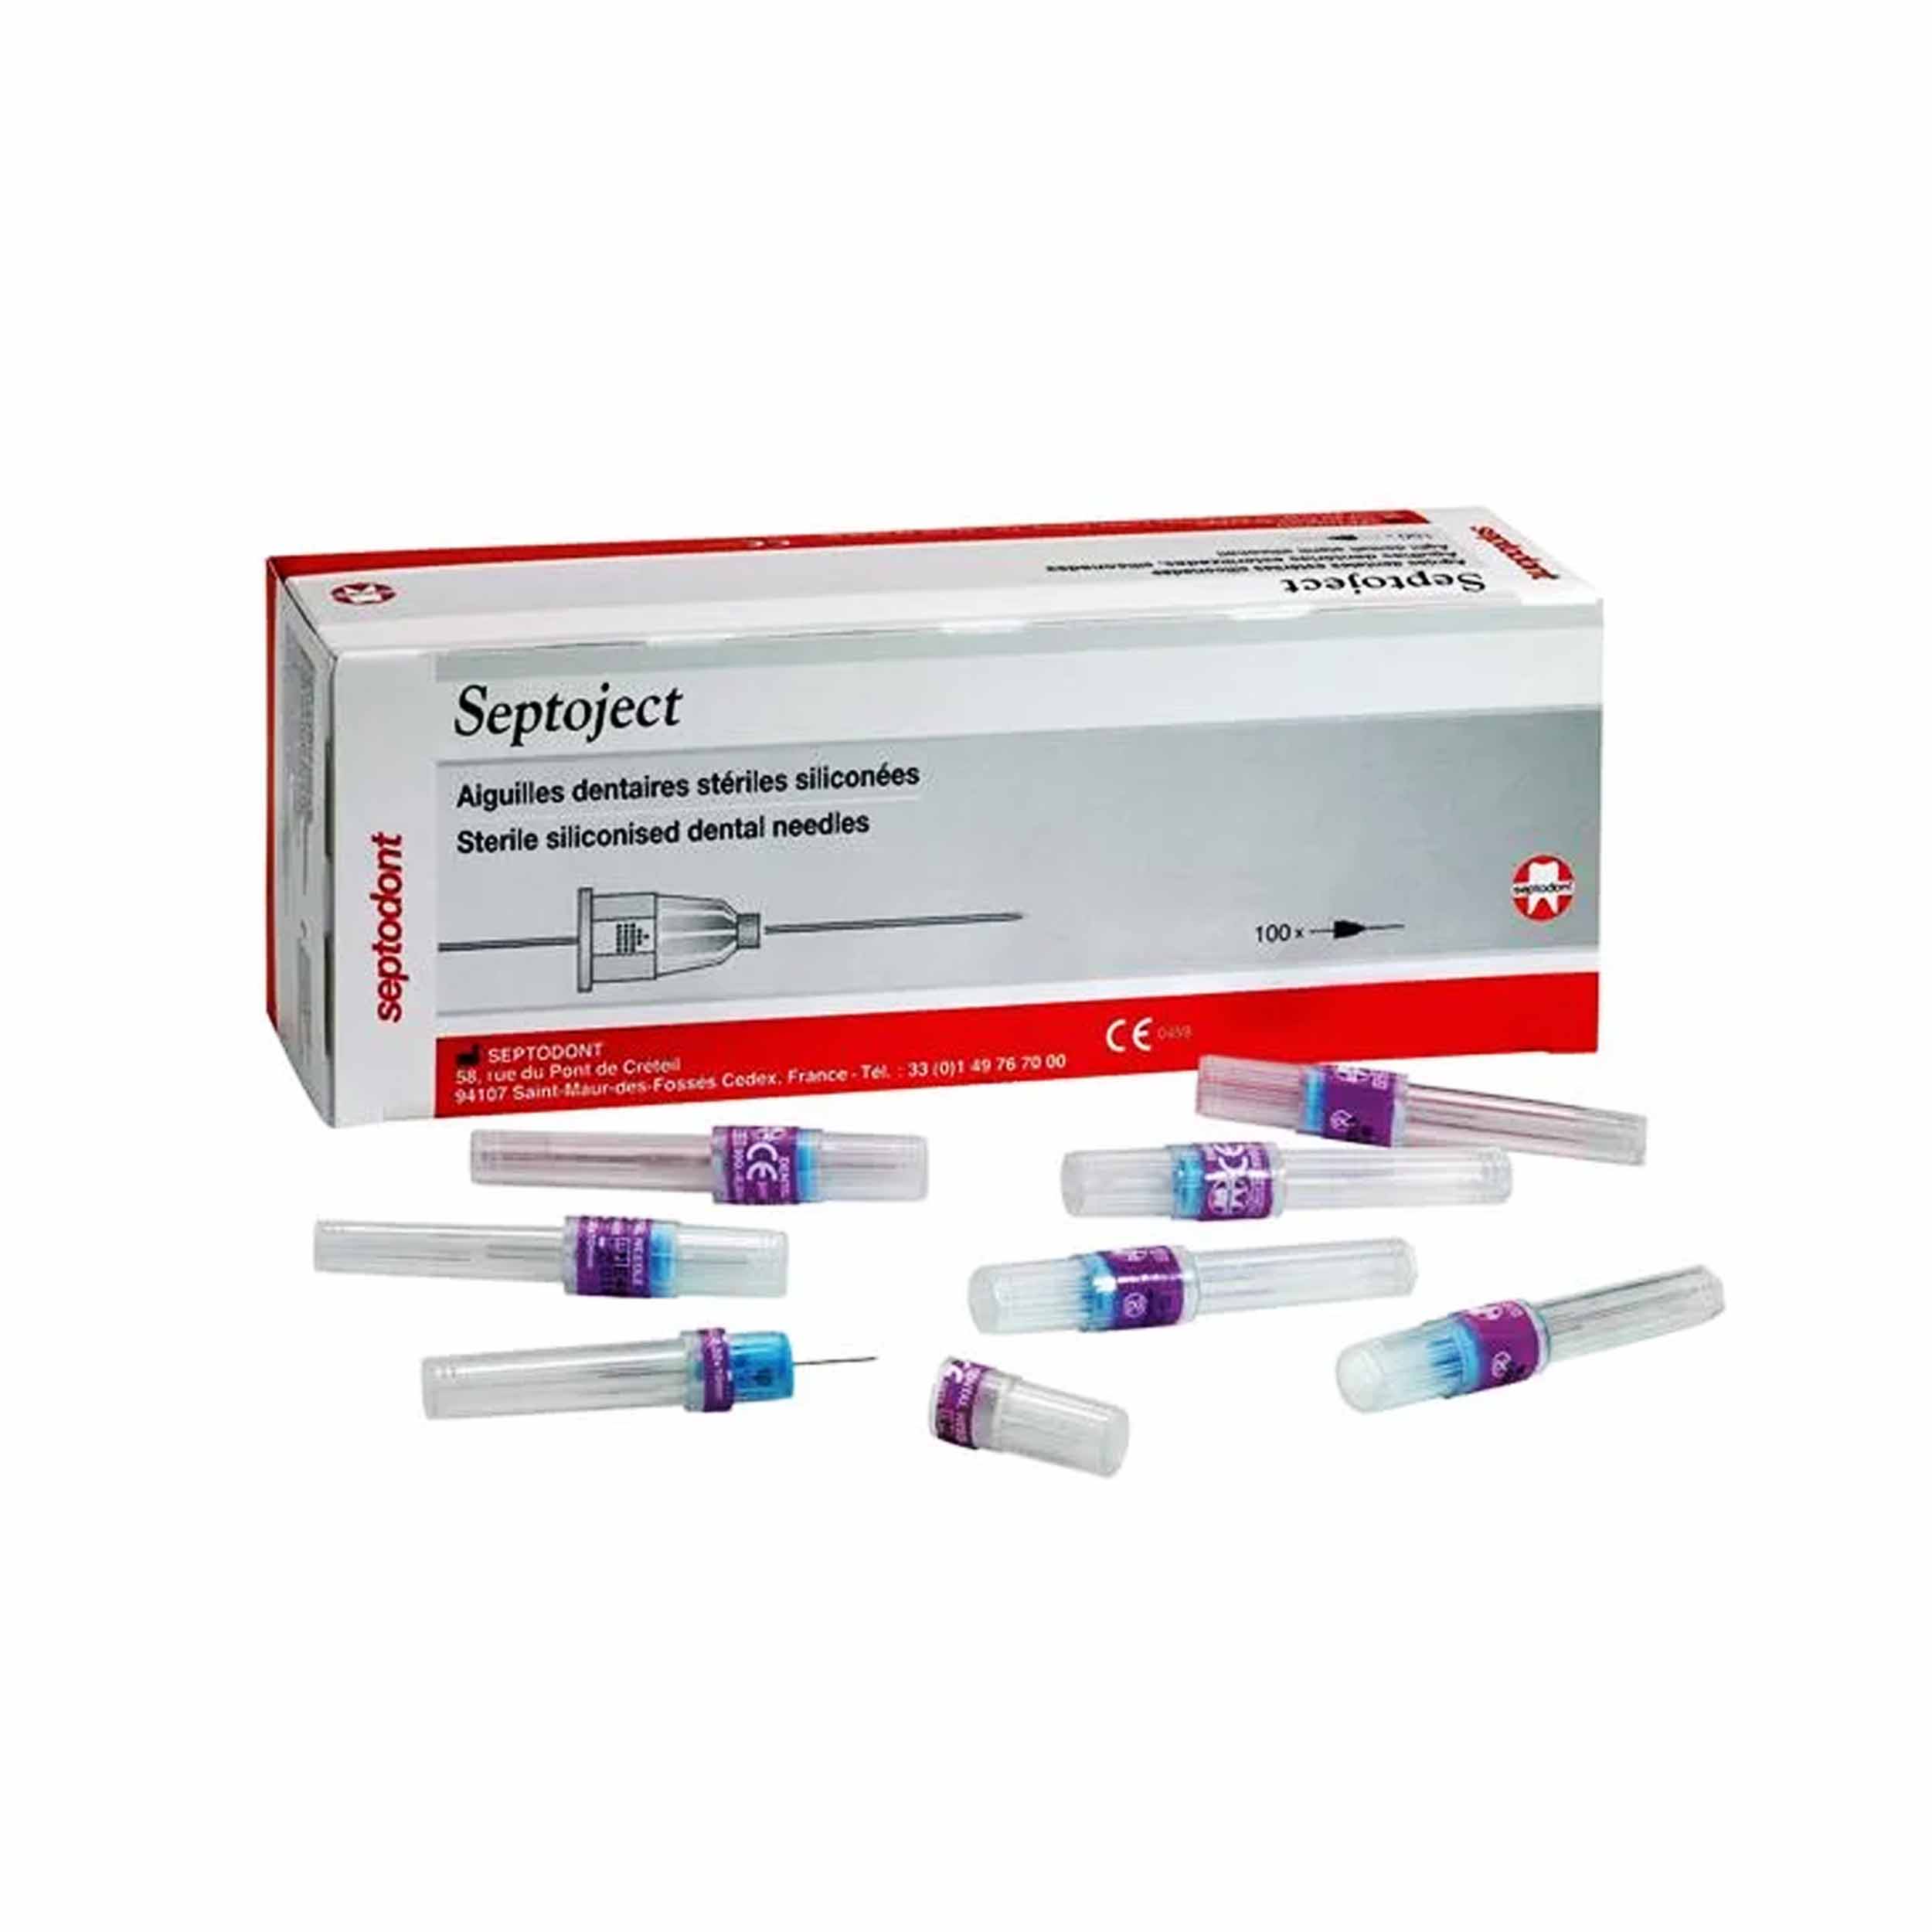 Septodont Septoject Needles For Dental Cartridge Syringe 30g/25mm